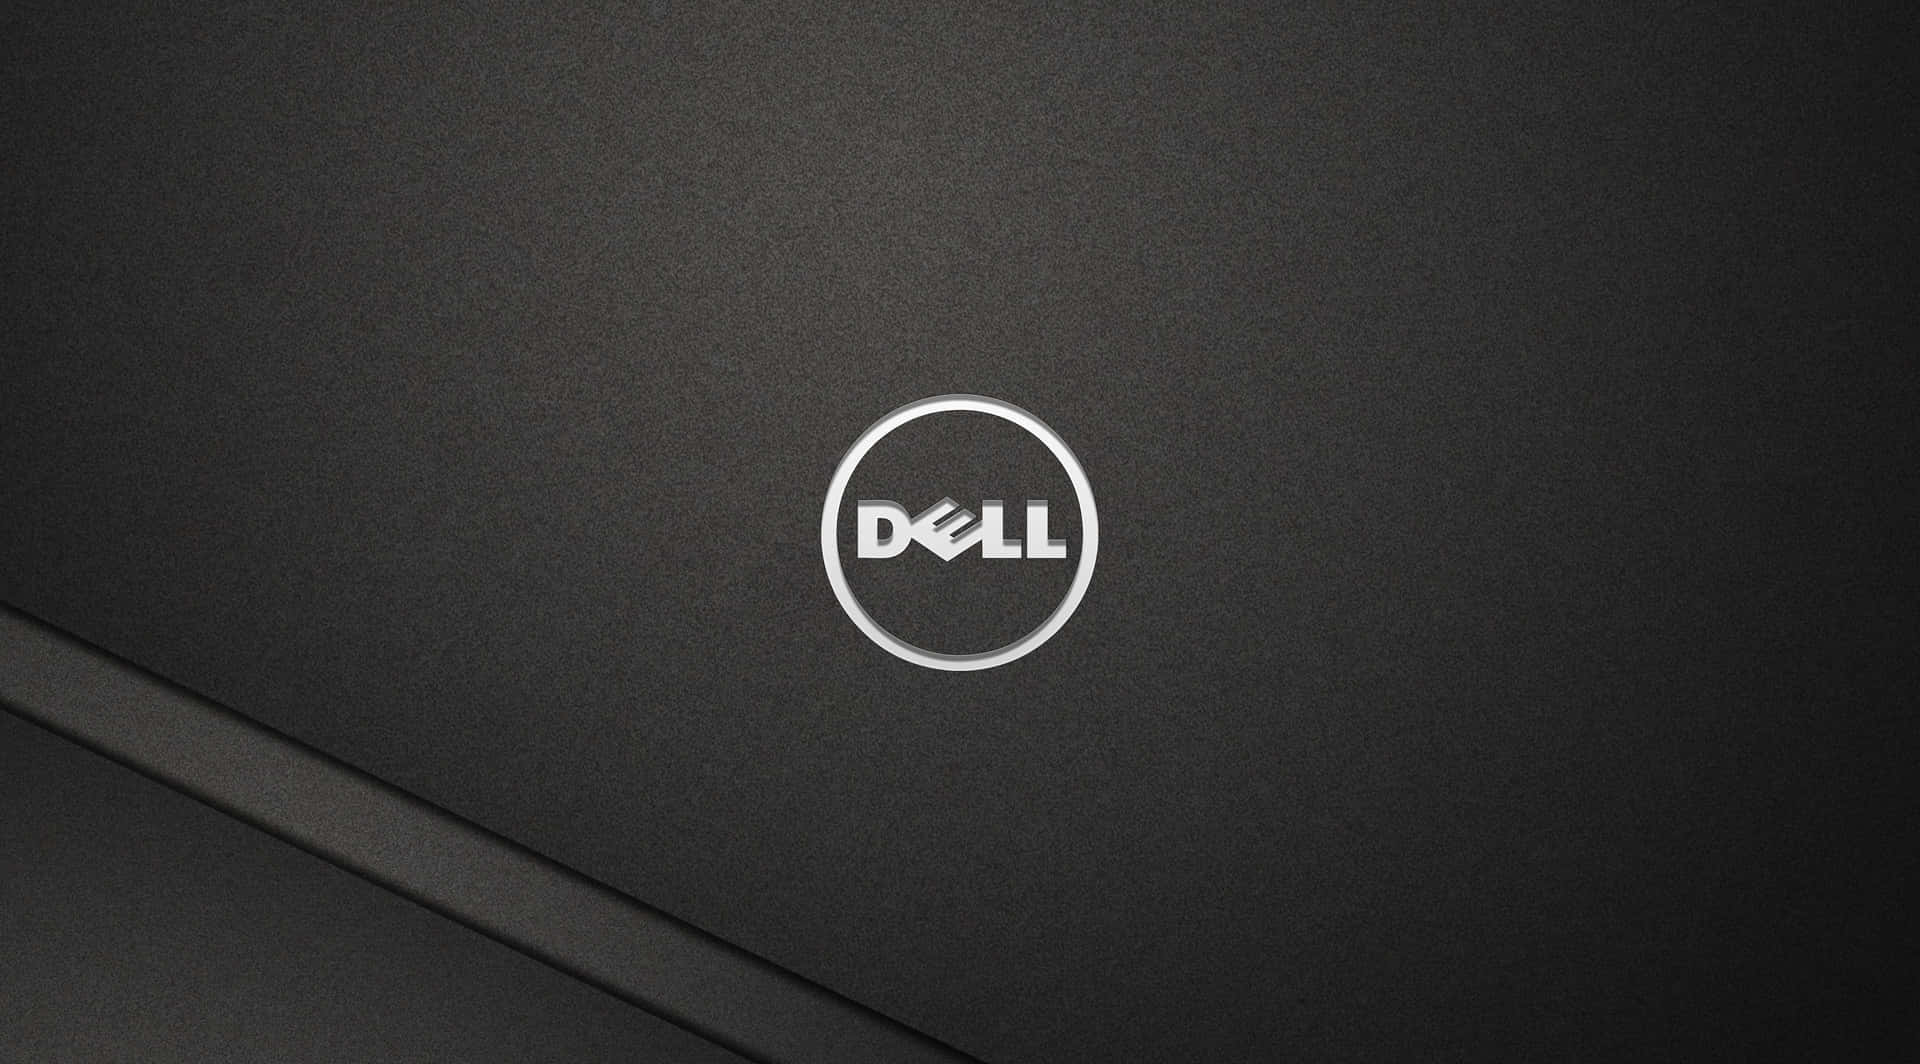 Dell,streben Nach Technologischer Exzellenz